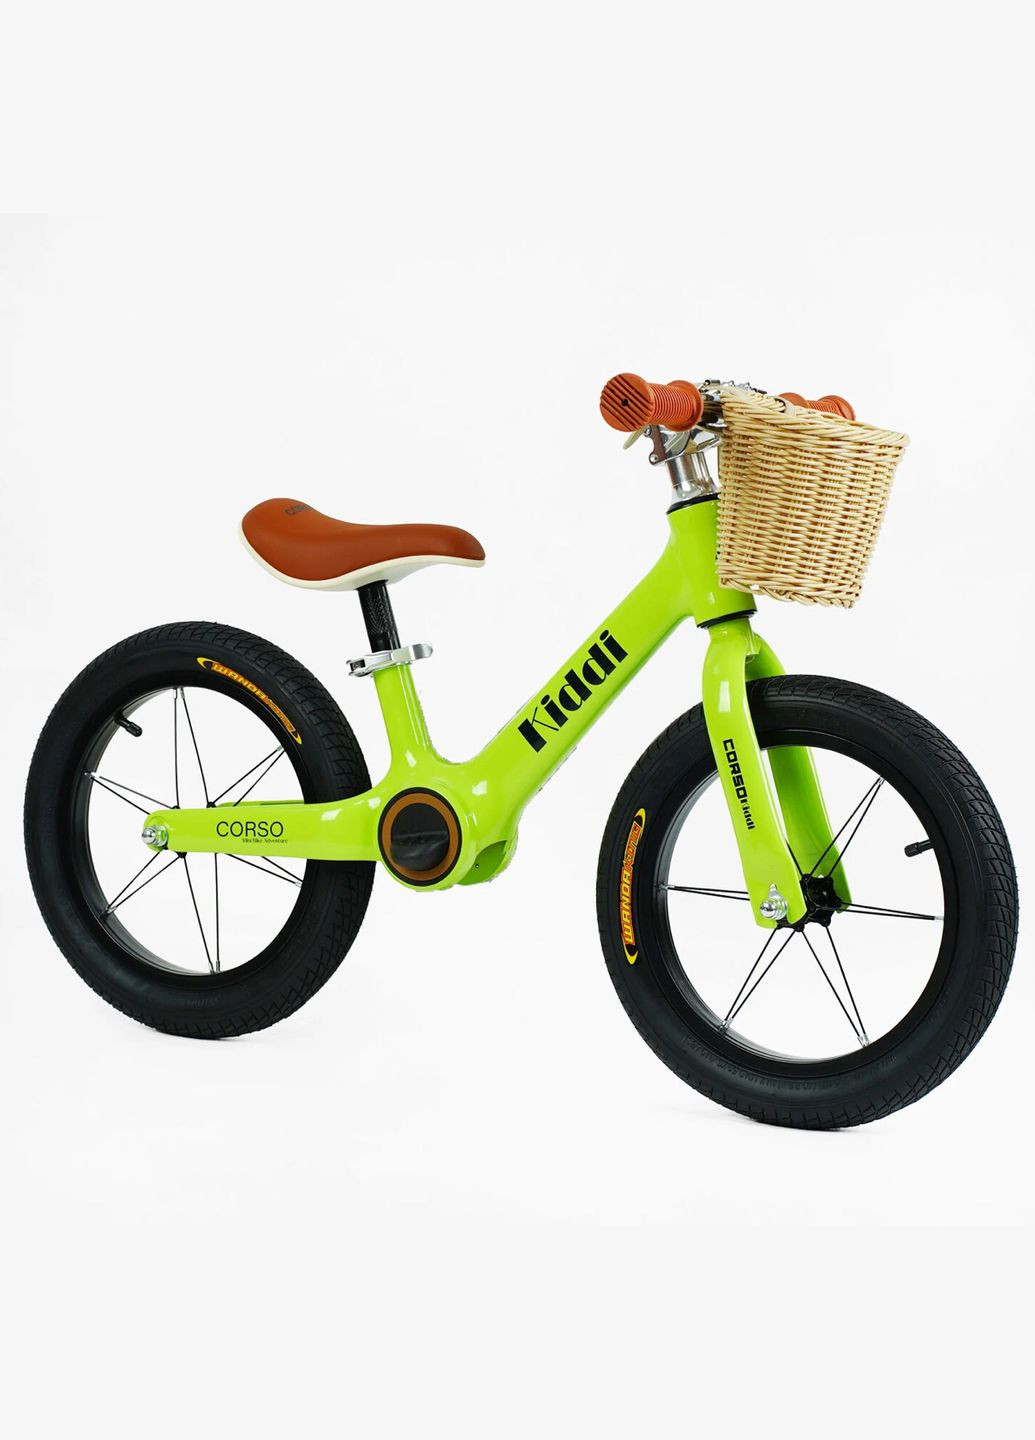 Детский велобег KIDDI LT-14127. Магниевая рама, надувные колеса 14", подставка для ног, корзина Corso (290254807)